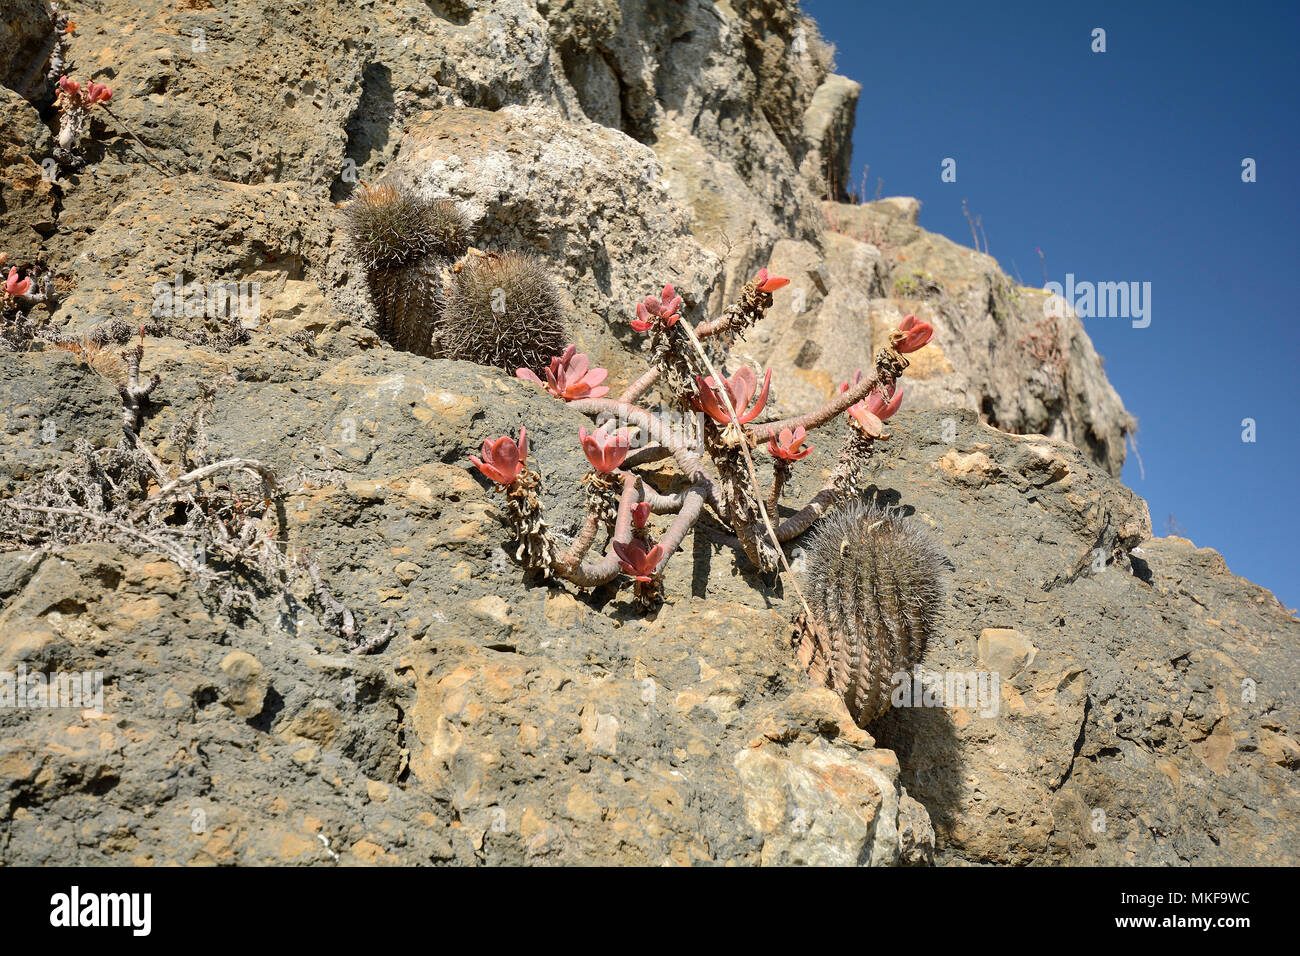 Chilenito (Eriosyce chilensis), Cactaceae endemic to Chile, Parque Puquen, Los Molles, La Ligua, V Region of Valparaiso, Chile Stock Photo